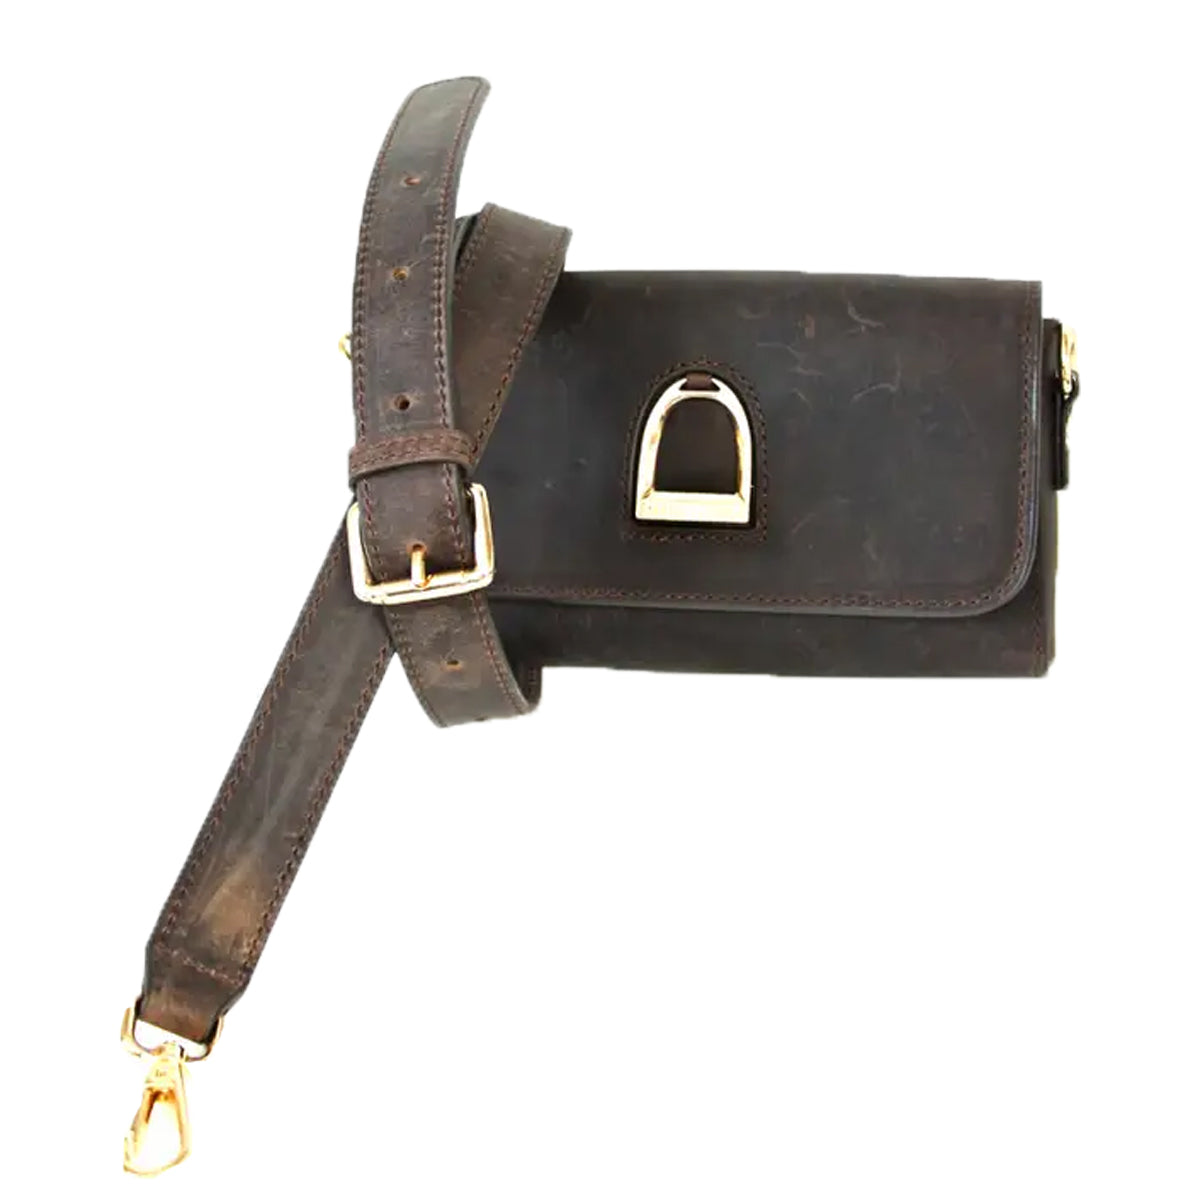 Oakbark & Chrome Rider Belt Bag